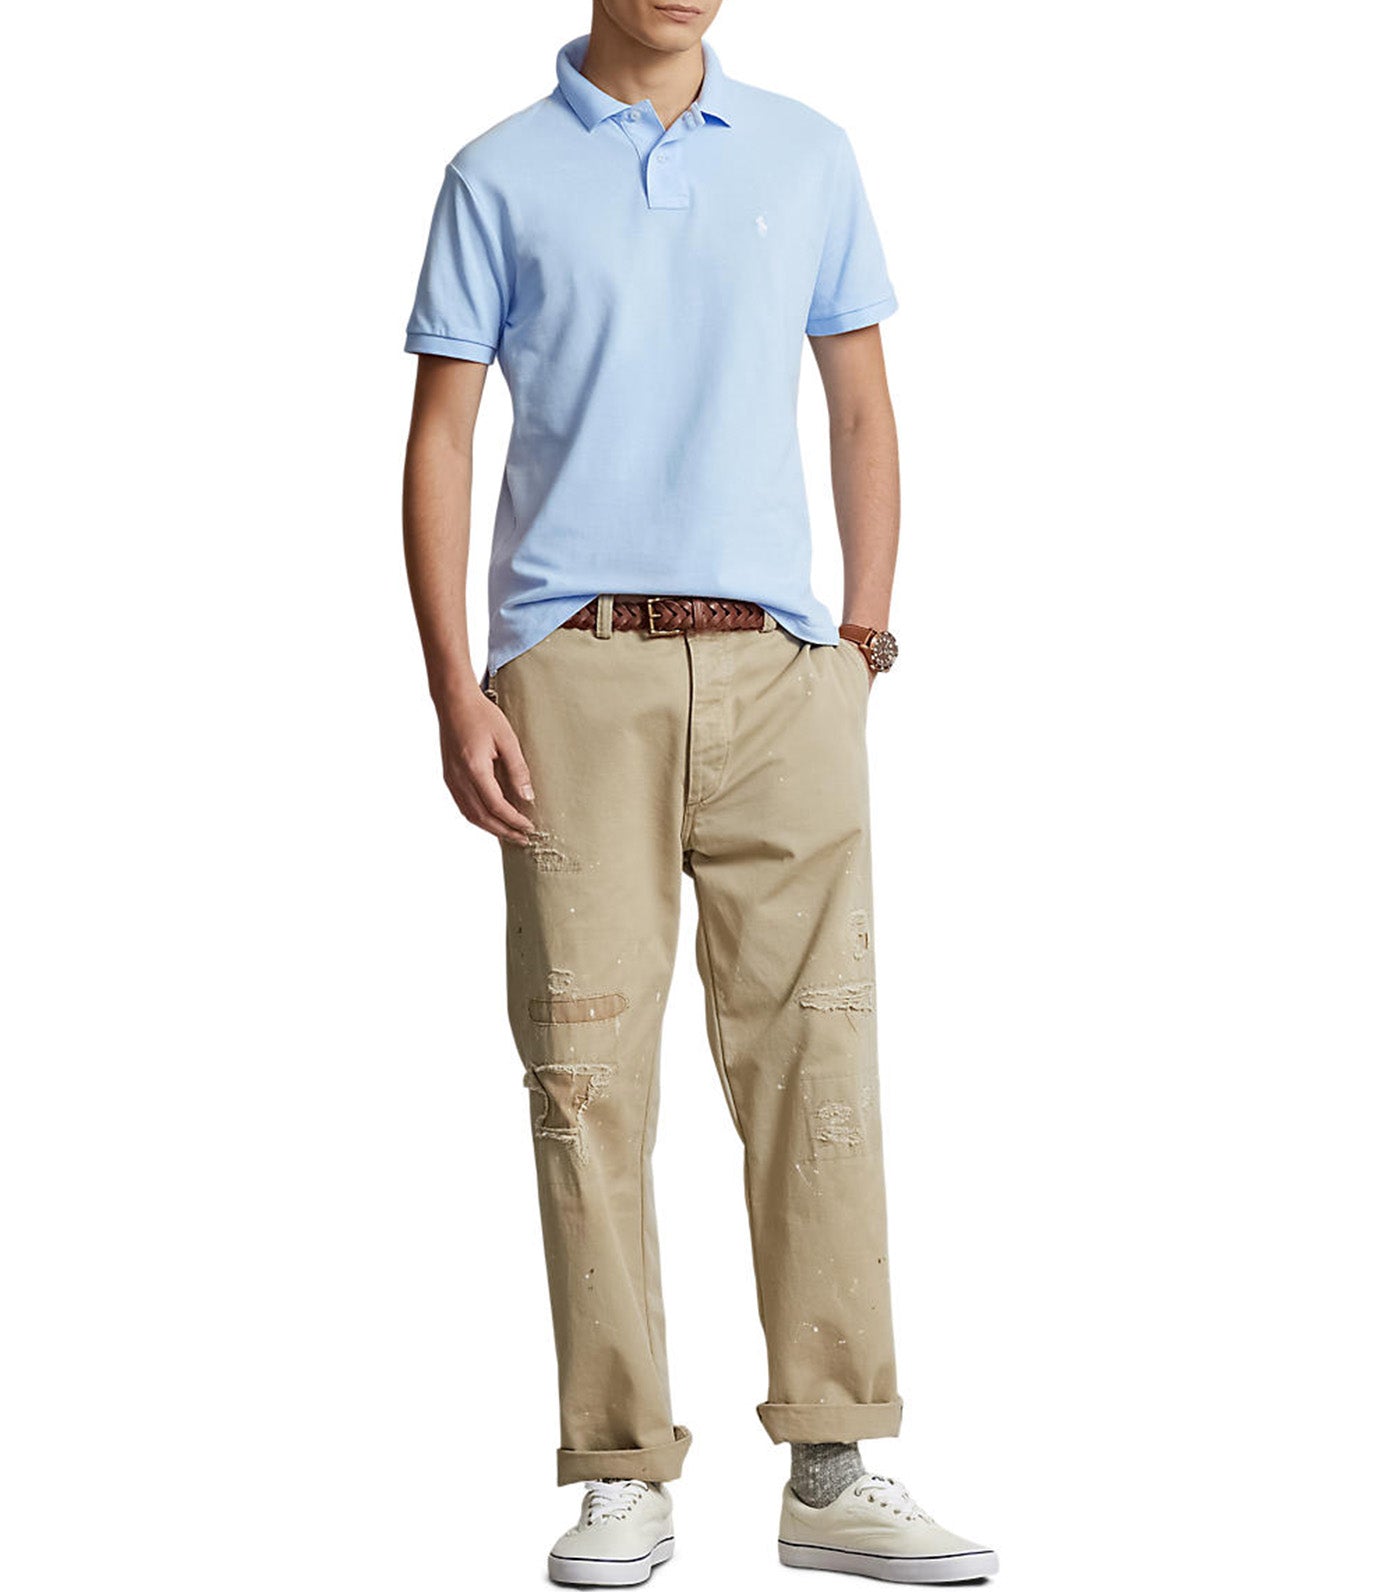 Men's Custom Slim Fit Mesh Polo Shirt Office Blue